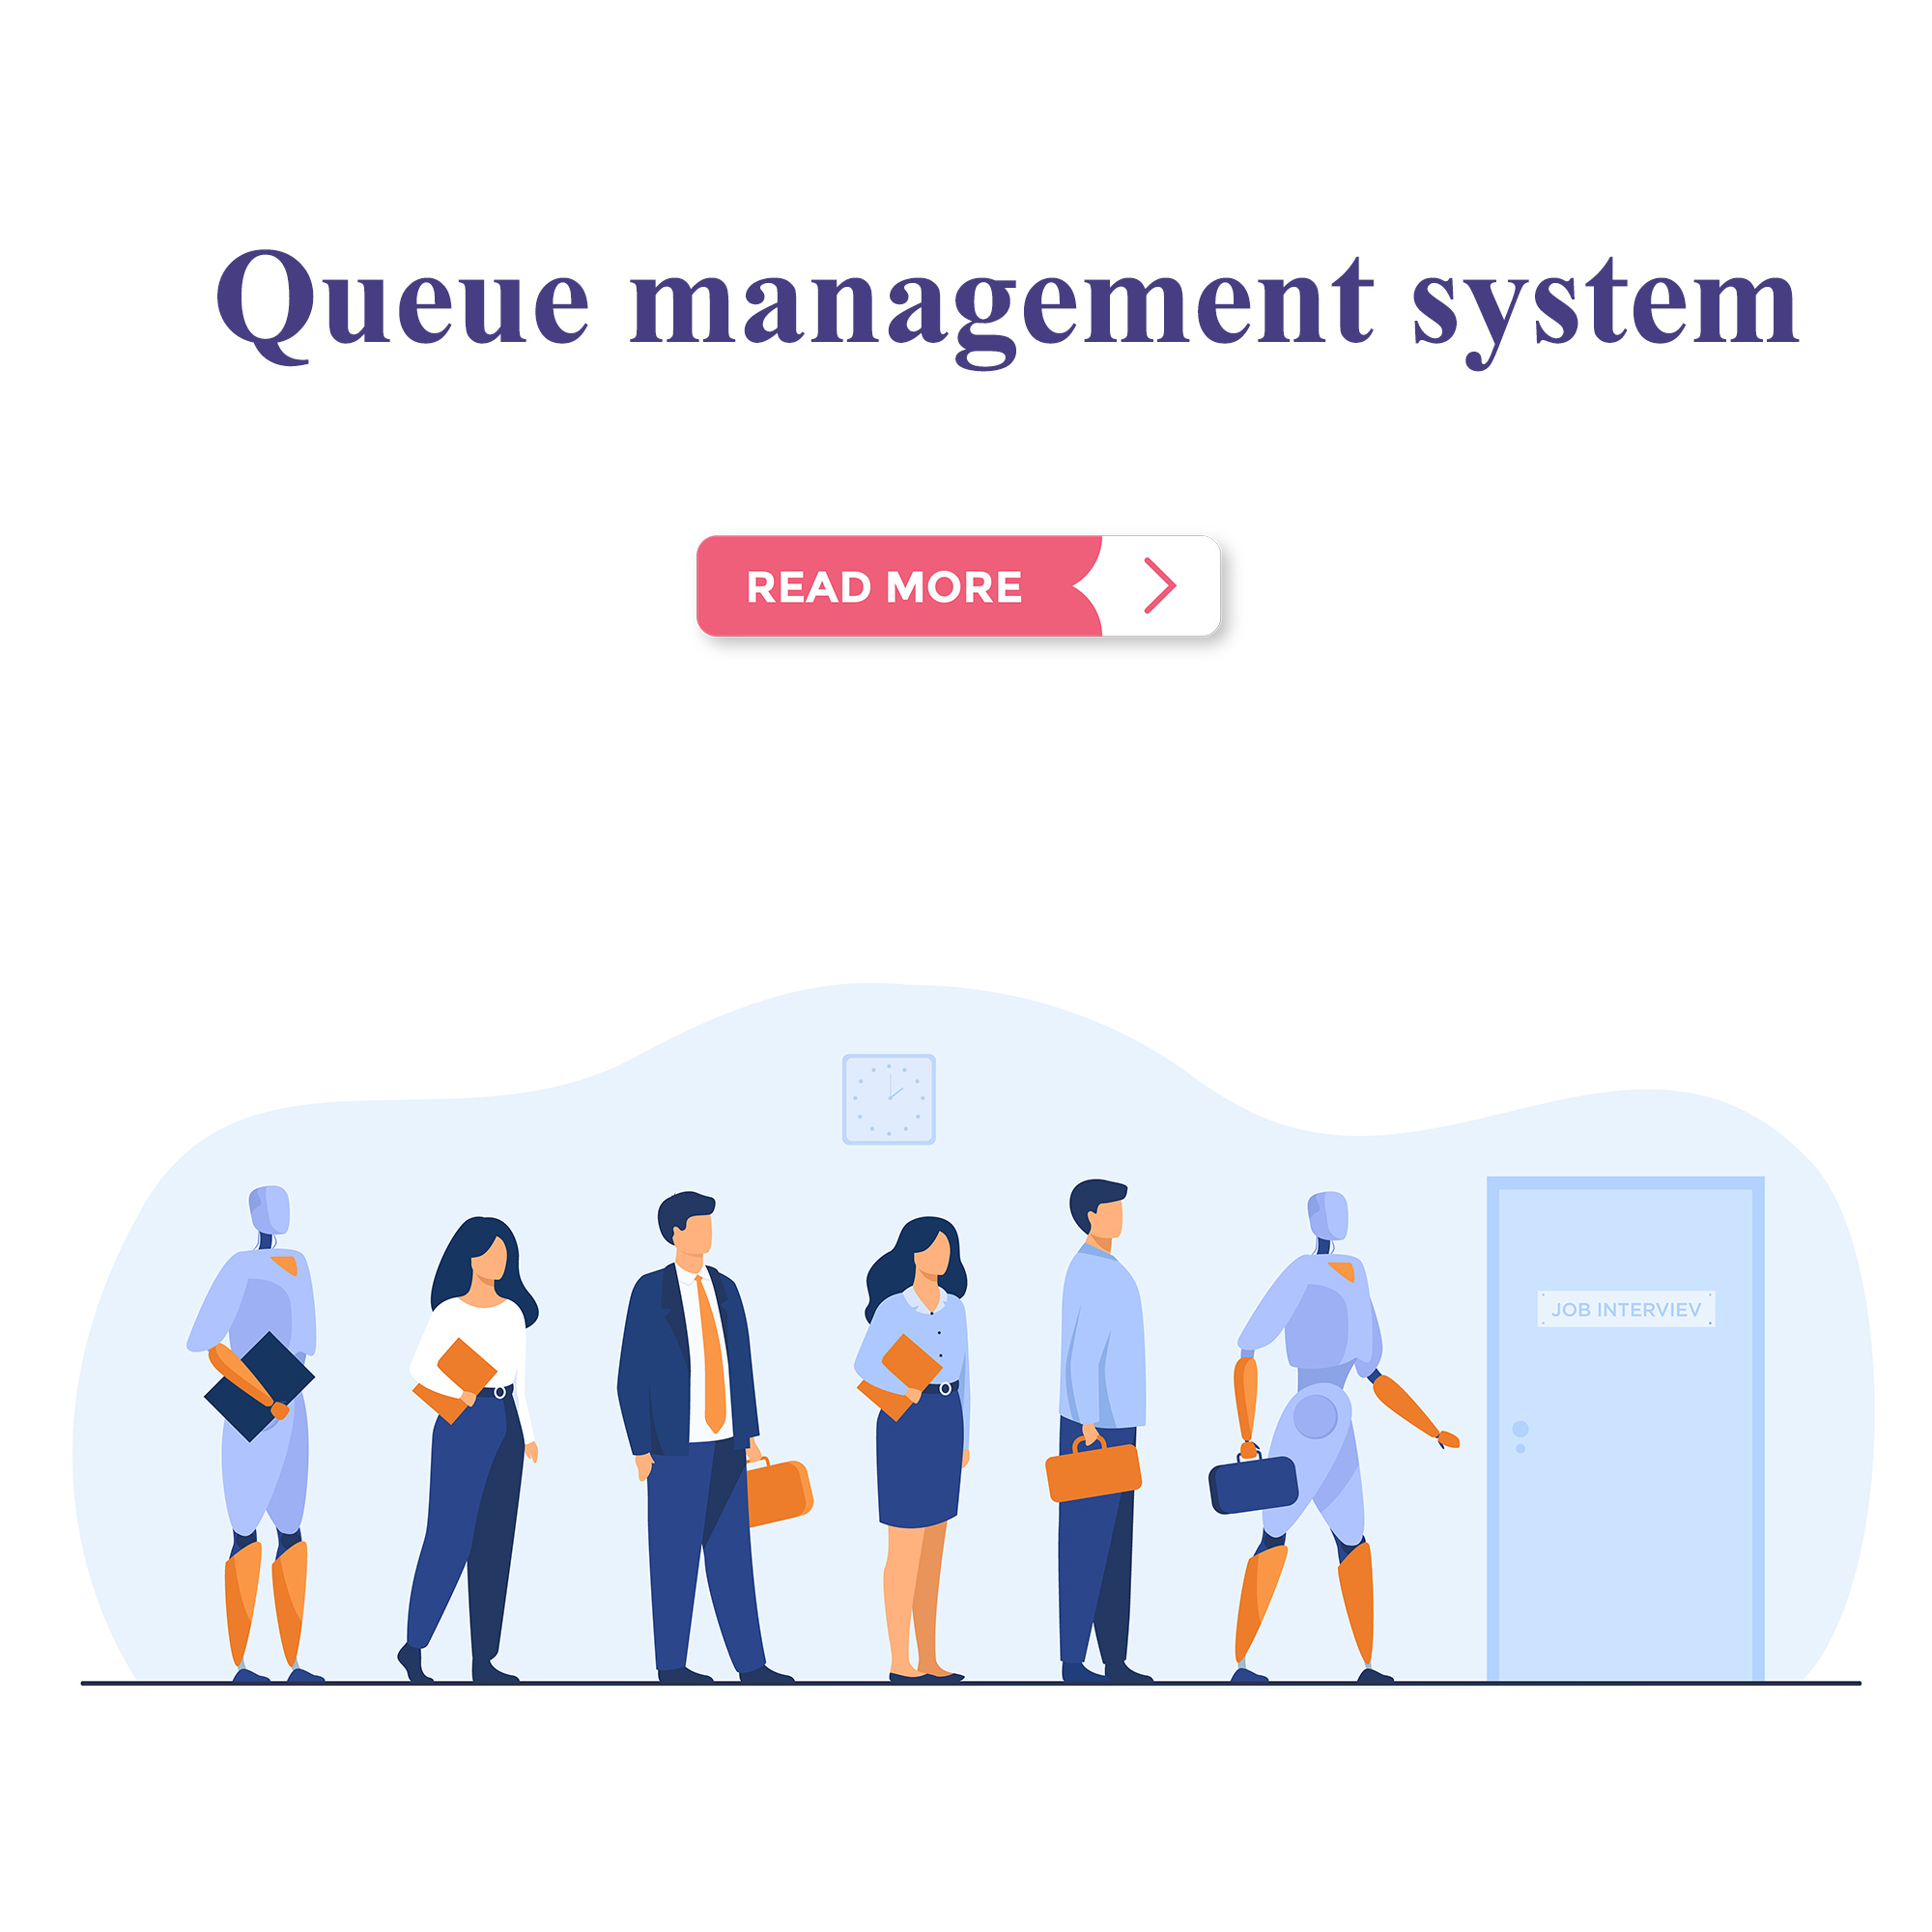 Queue management system